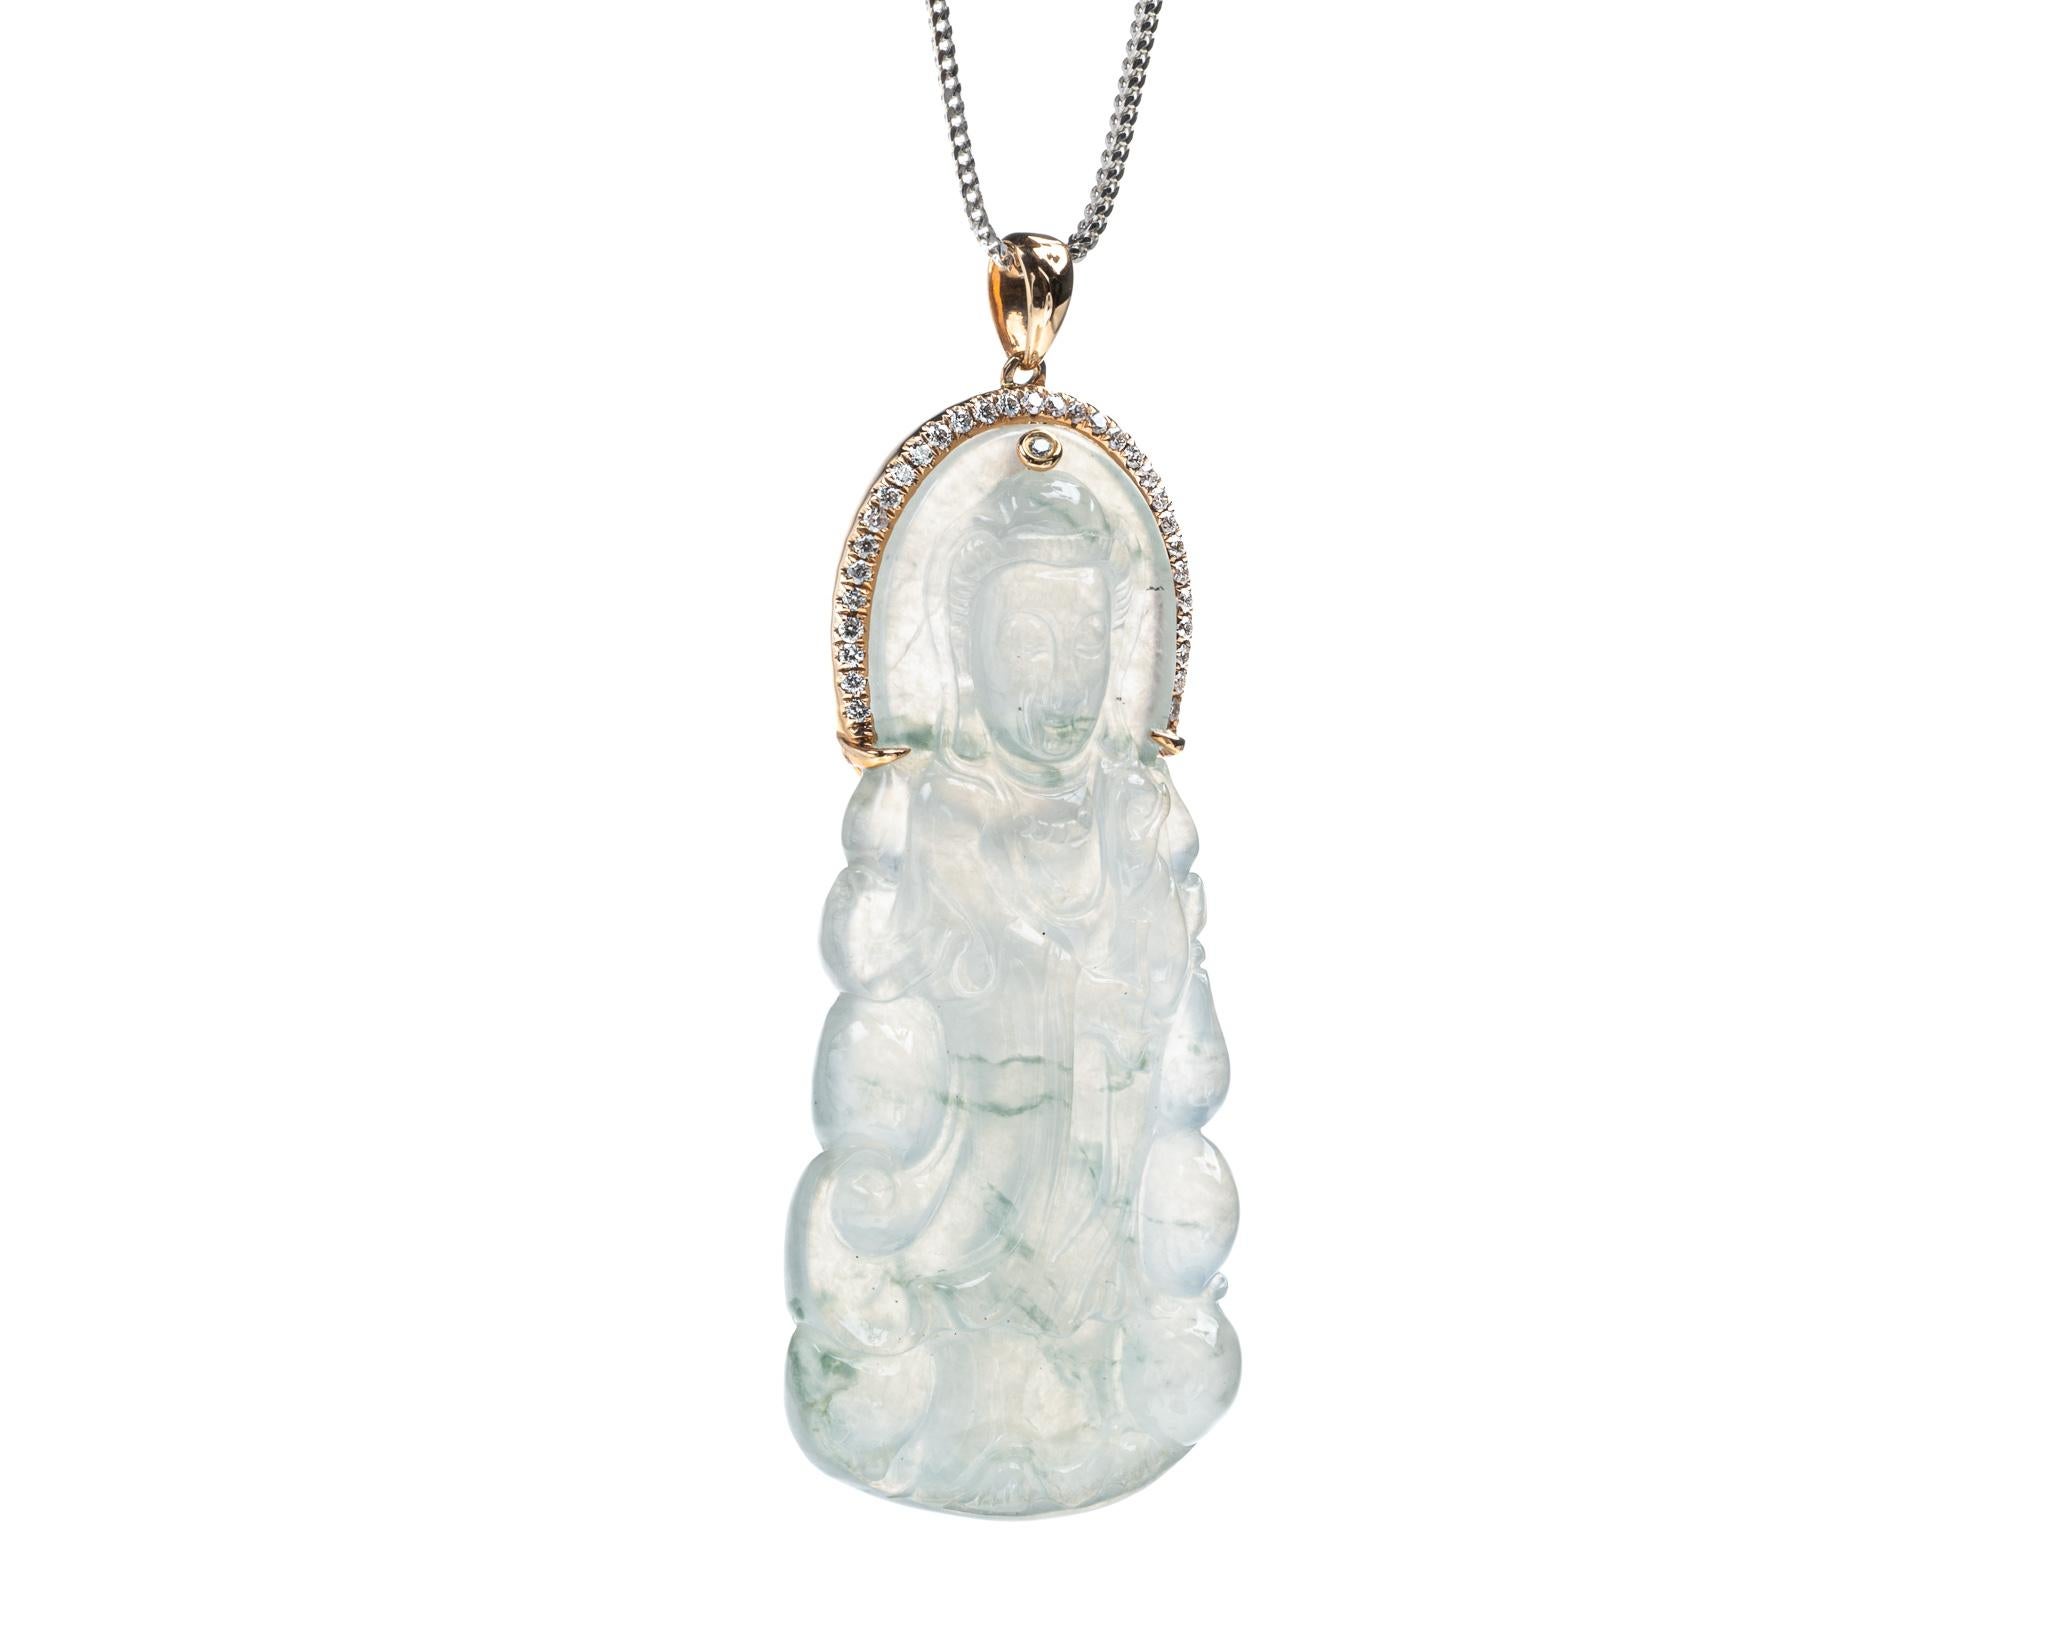 Il s'agit d'un pendentif en jade glacé entièrement naturel, non traité, avec des veines de jade vertes sculptées en dieu Quan Yin et diamant, monté sur une bague en or rose 18 carats et diamant.  Le dieu sculpté Quan Yin symbolise la paix et la